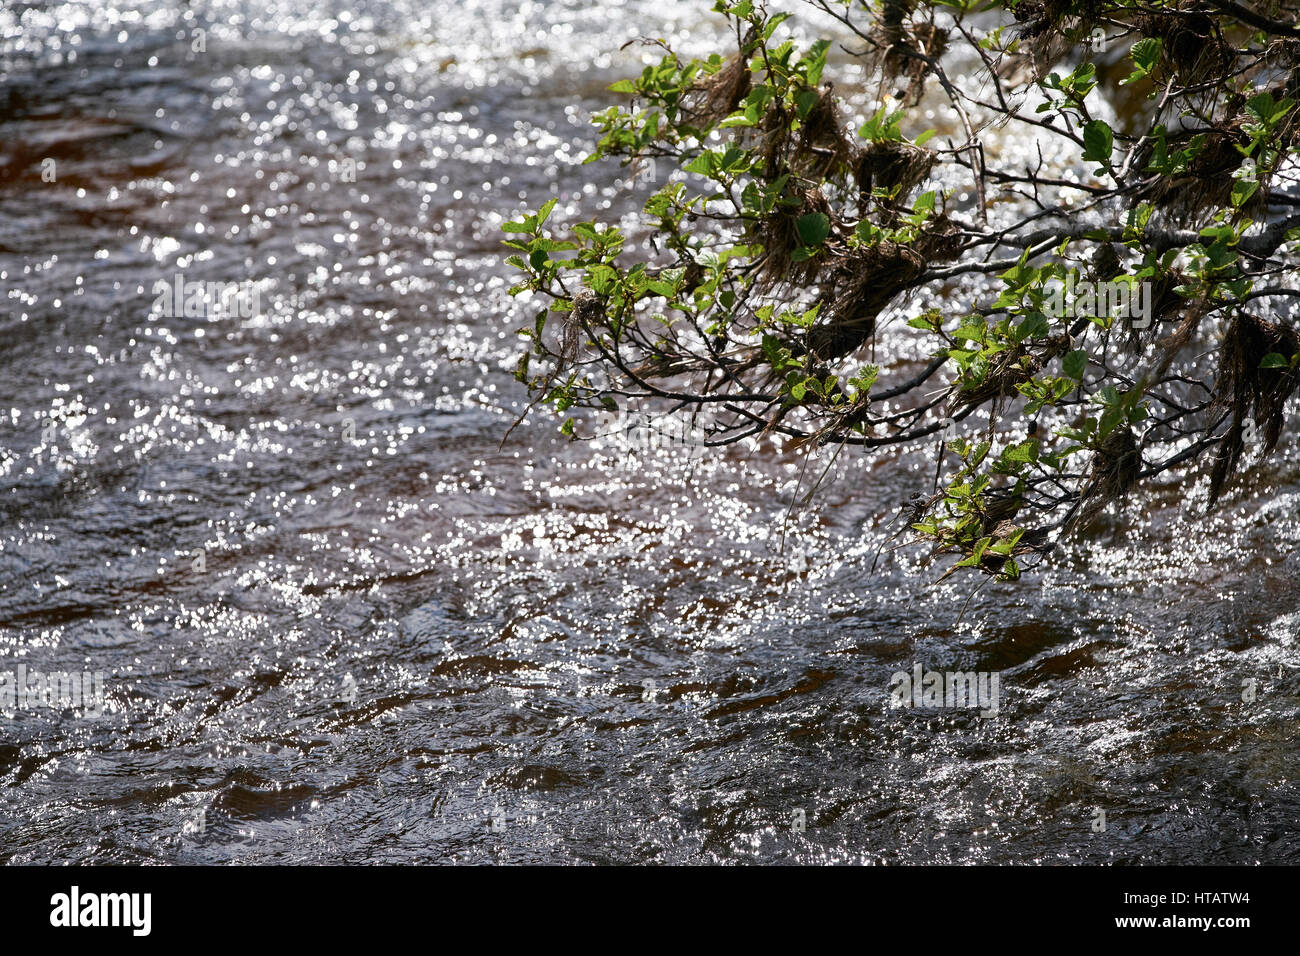 Des débris dans les arbres entourant la rivière Spey après une récente inondation. Highlands écossais, au Royaume-Uni. Banque D'Images